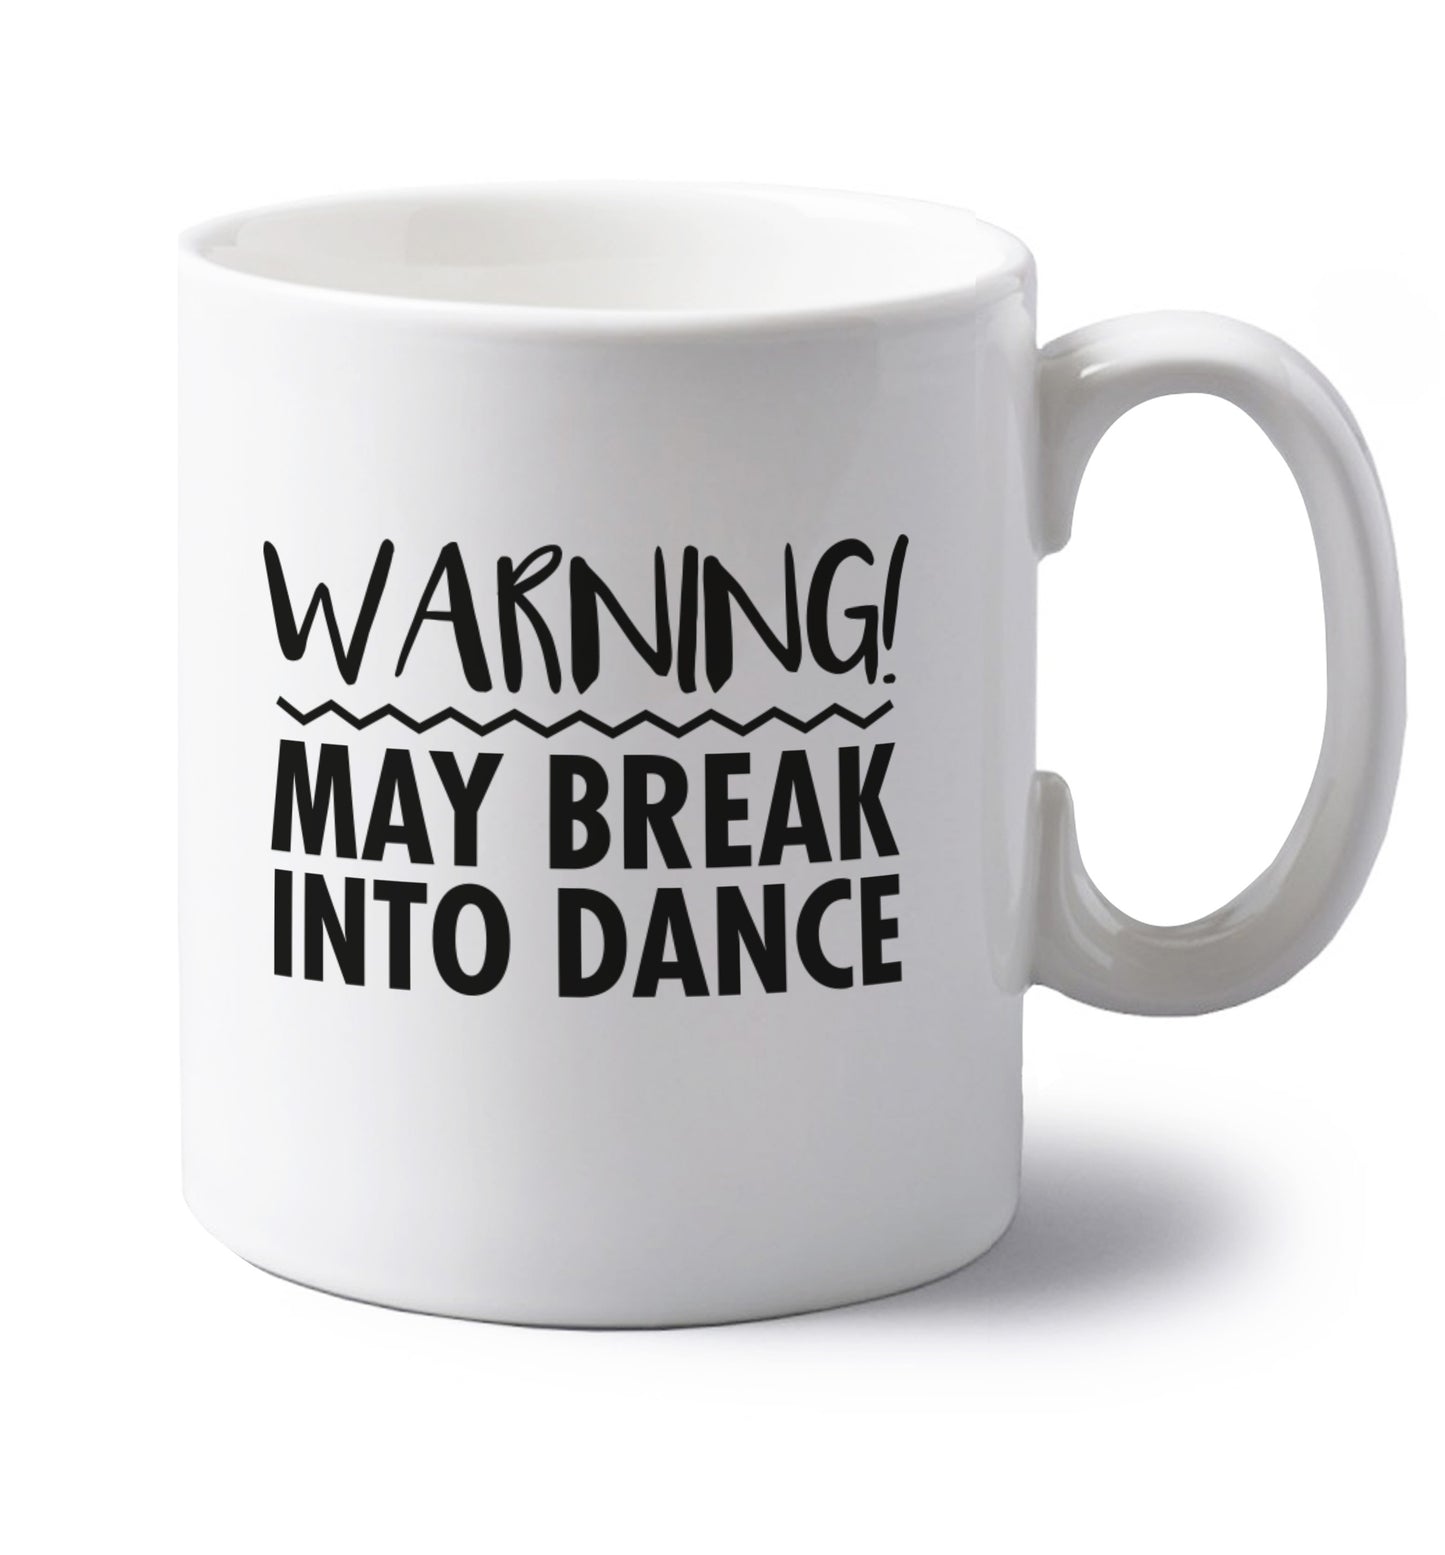 Warning may break into dance left handed white ceramic mug 